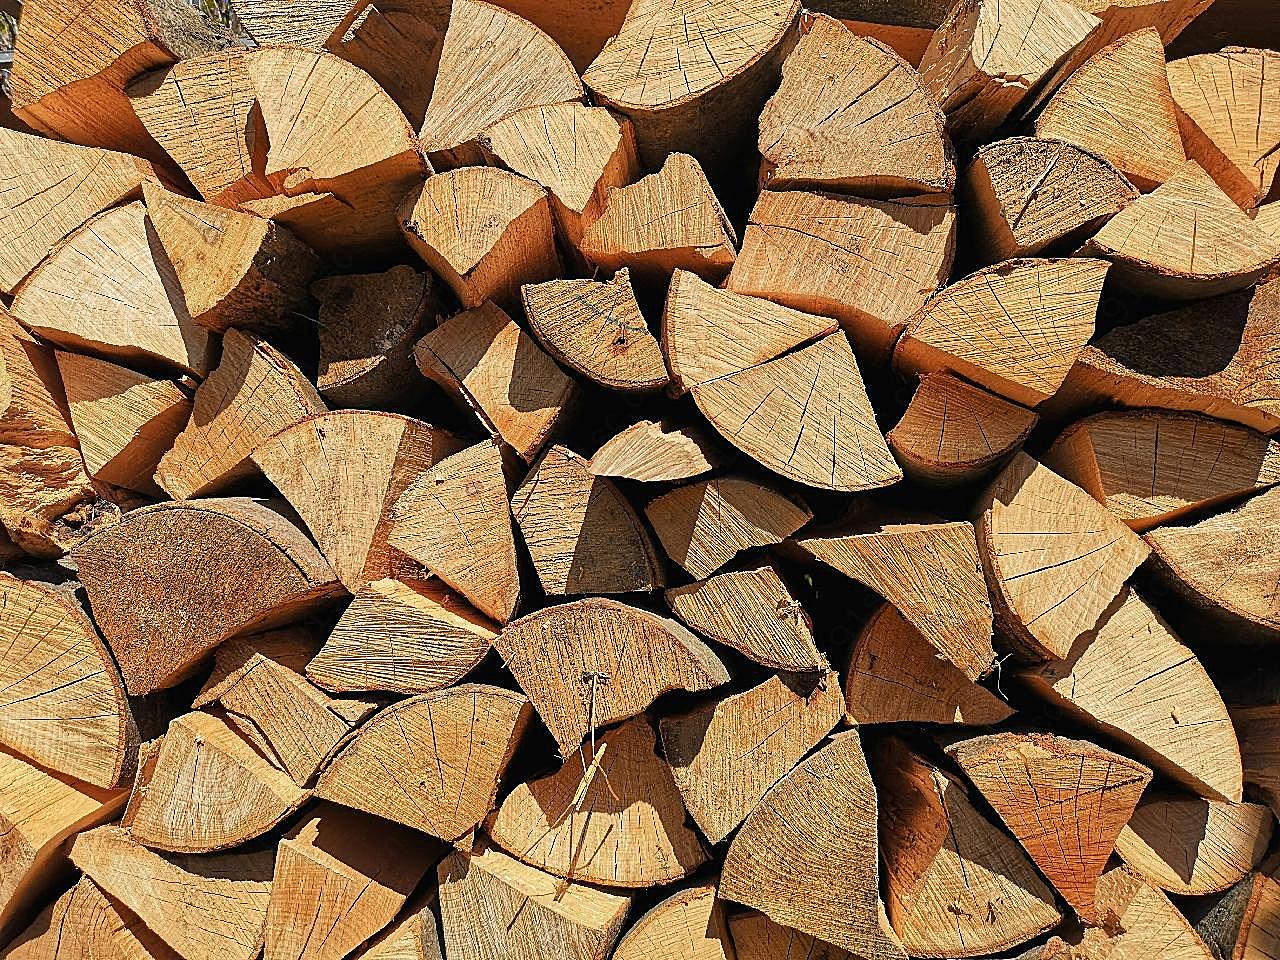 方块木材堆图片自然